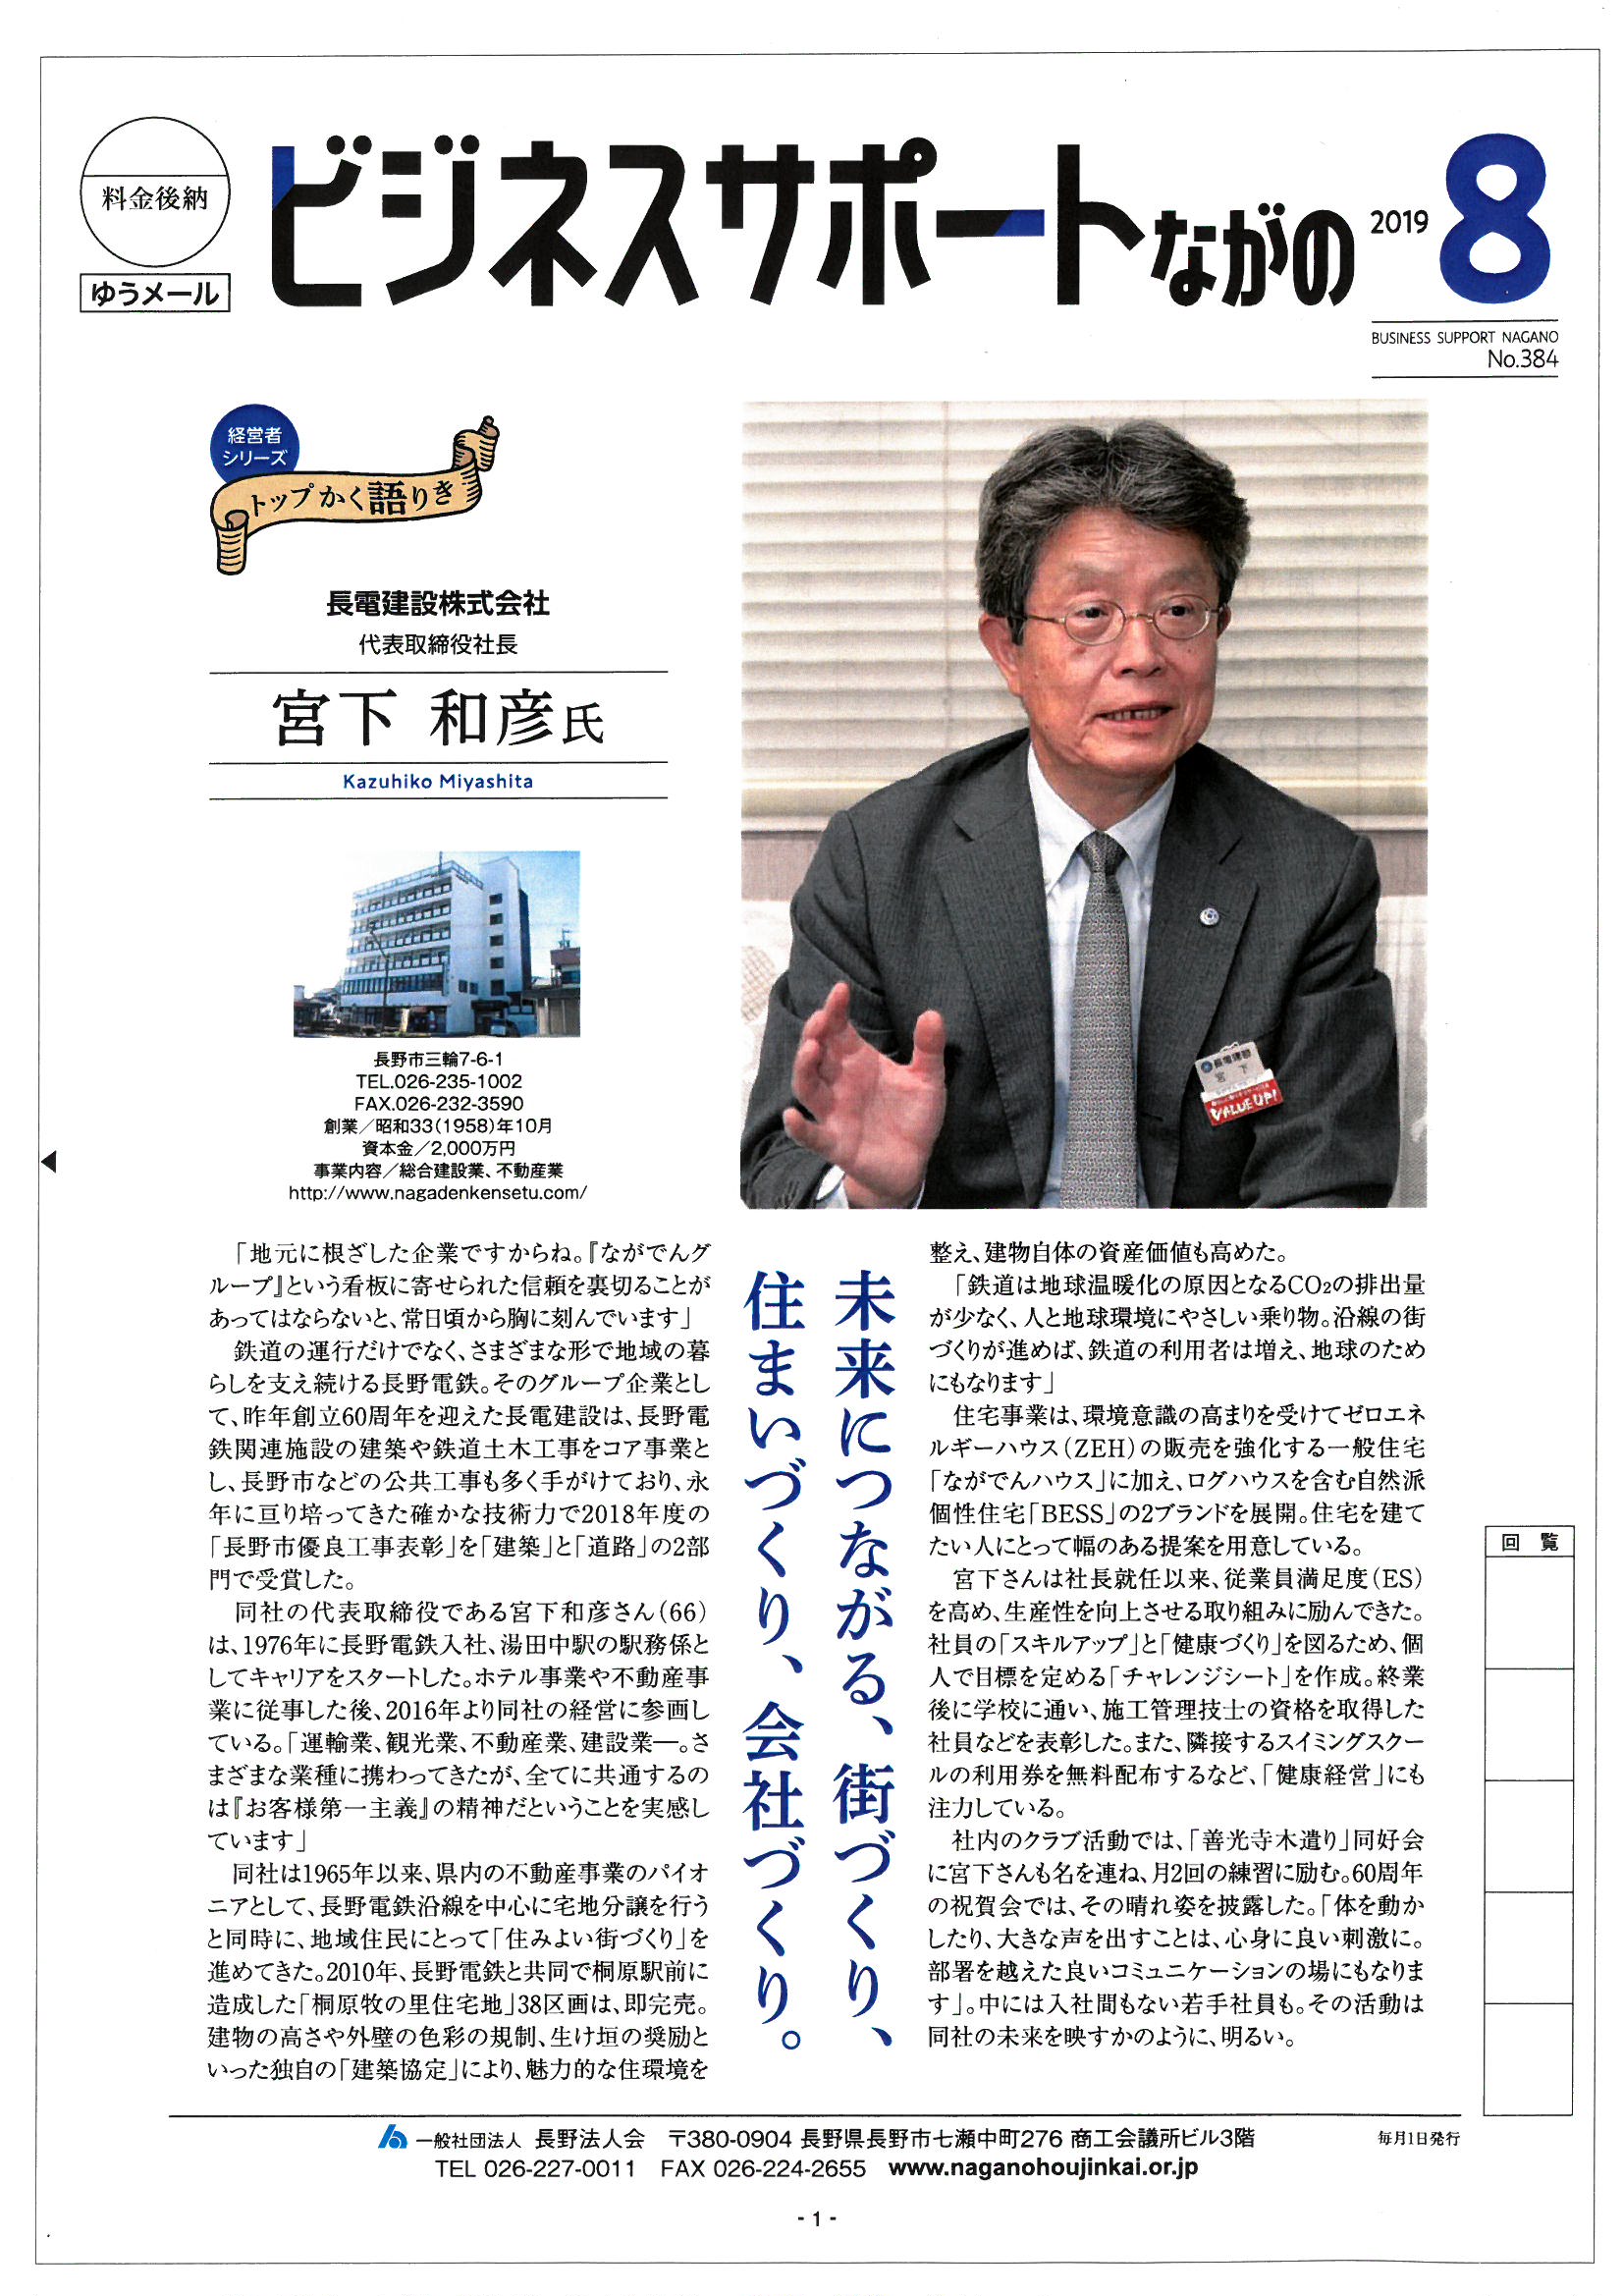 長野県法人会「ビジネスサポートながの」の画像